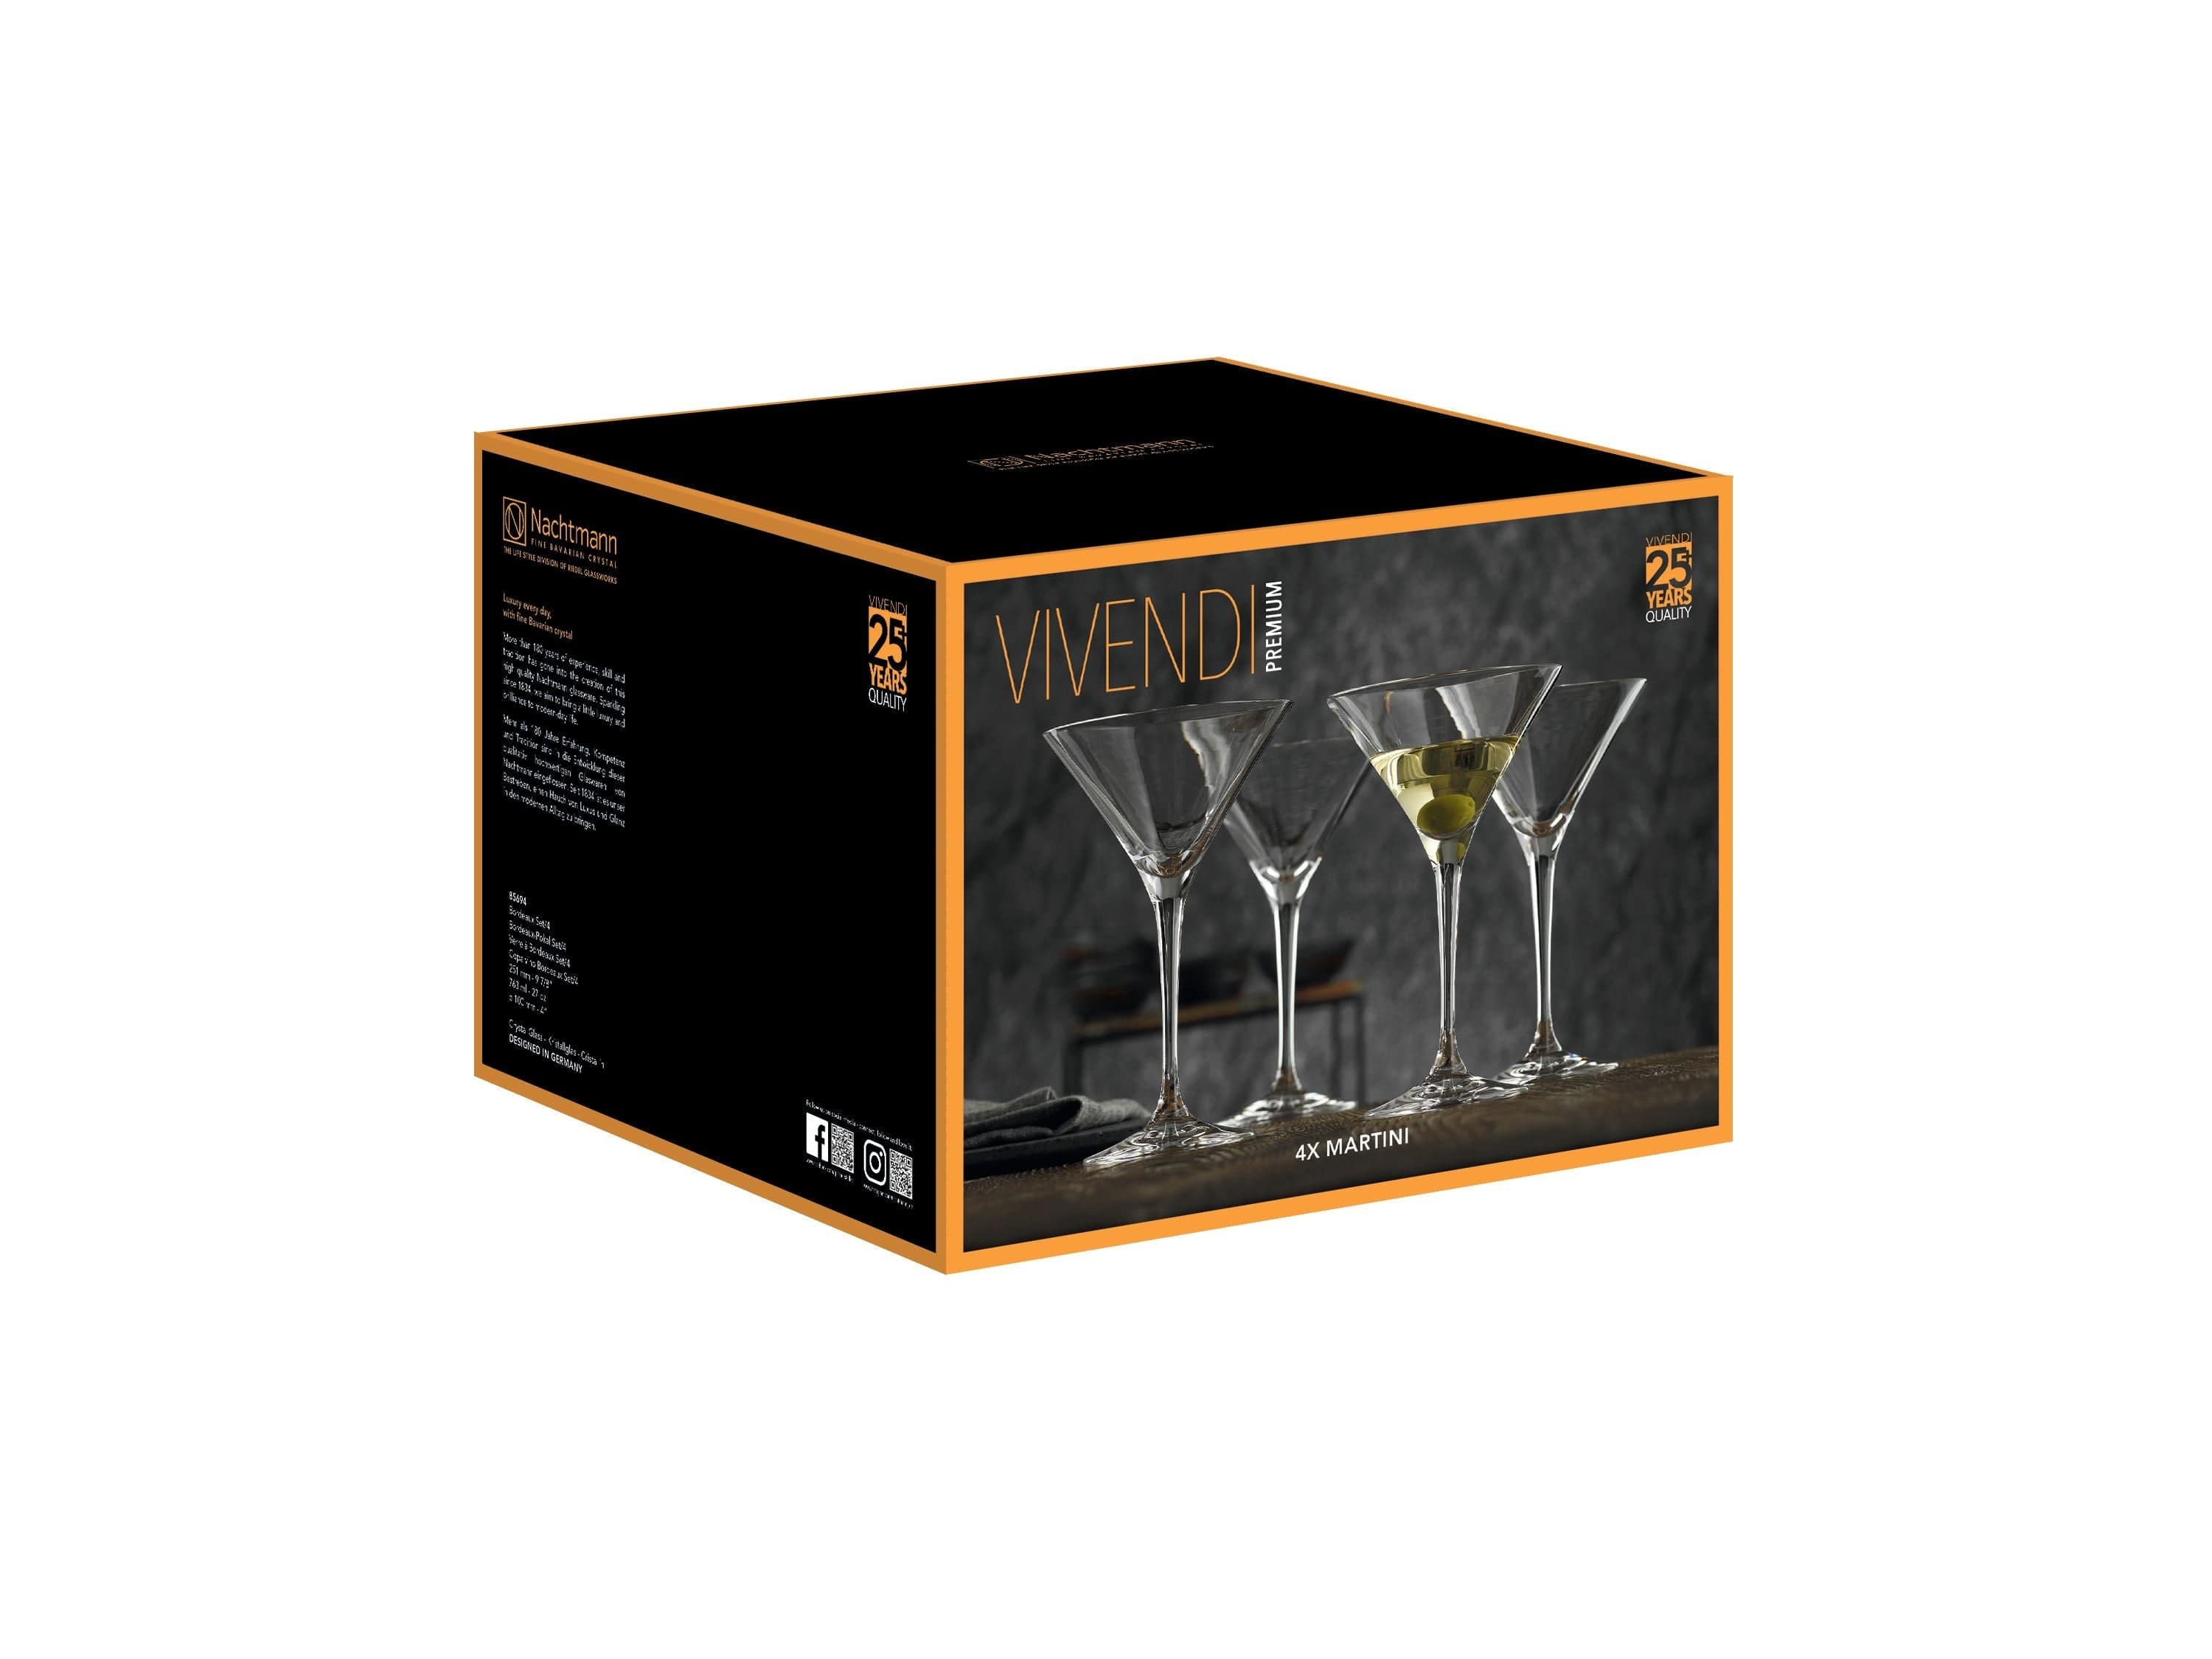 Nachtmann Vivendi Premium Martiniglas 195 Ml, Set Of 4